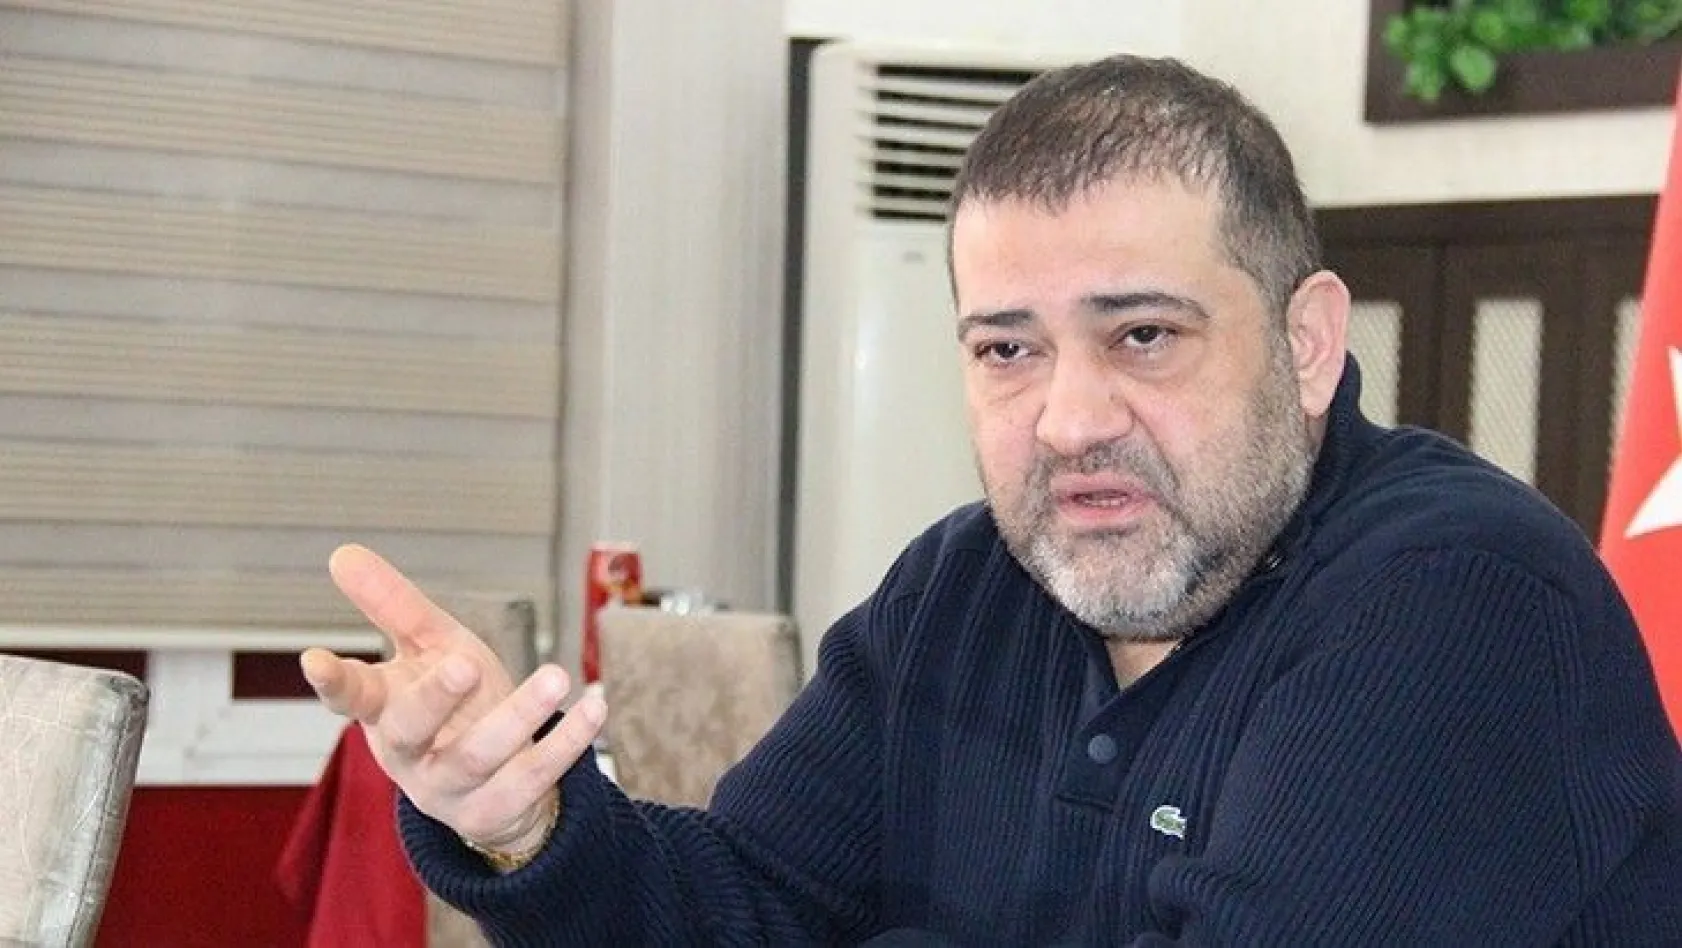 Elazığspor Kulüp Başkanı Selçuk Öztürk, istifa sinyali verdi